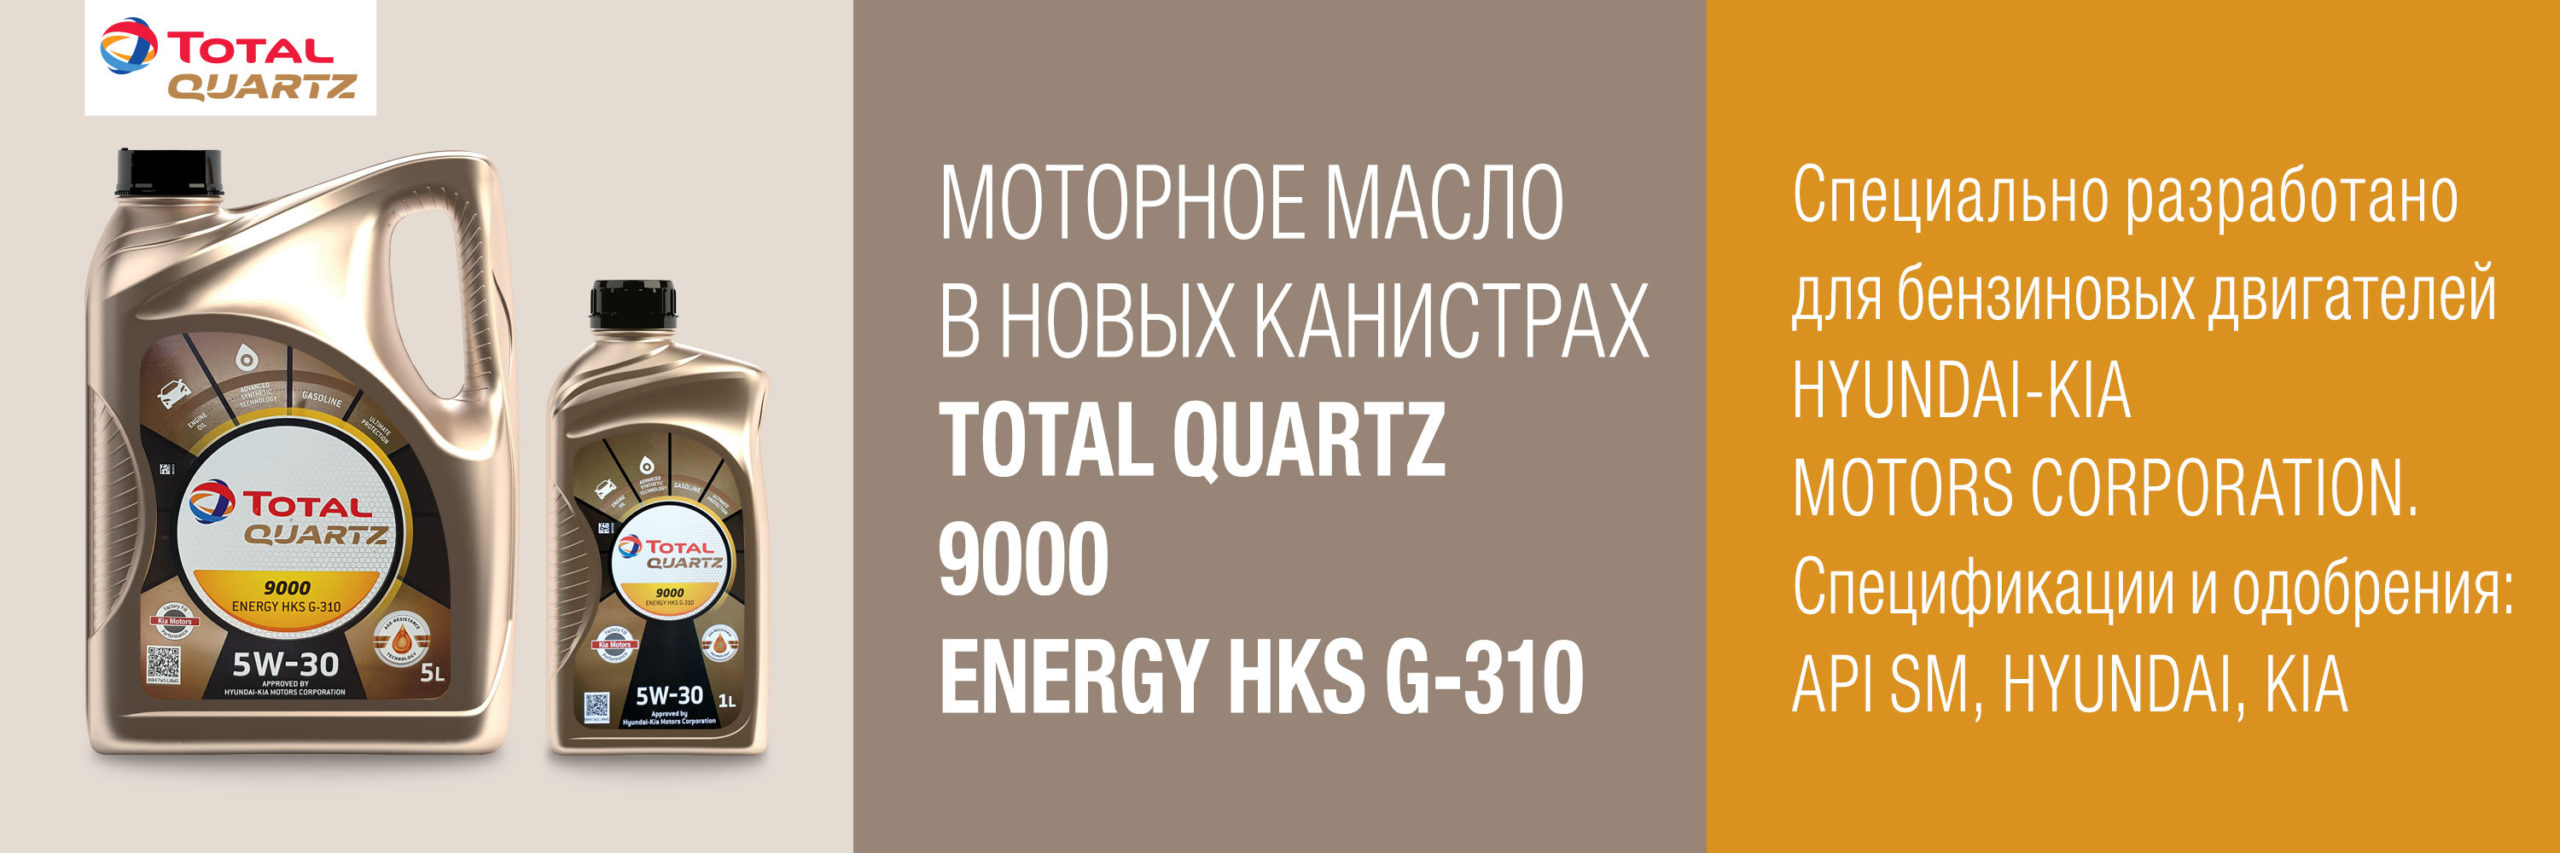 ИНТЕР ОИЛ - Новые канистры продукта: моторное масло TOTAL QUARTZ 9000 .